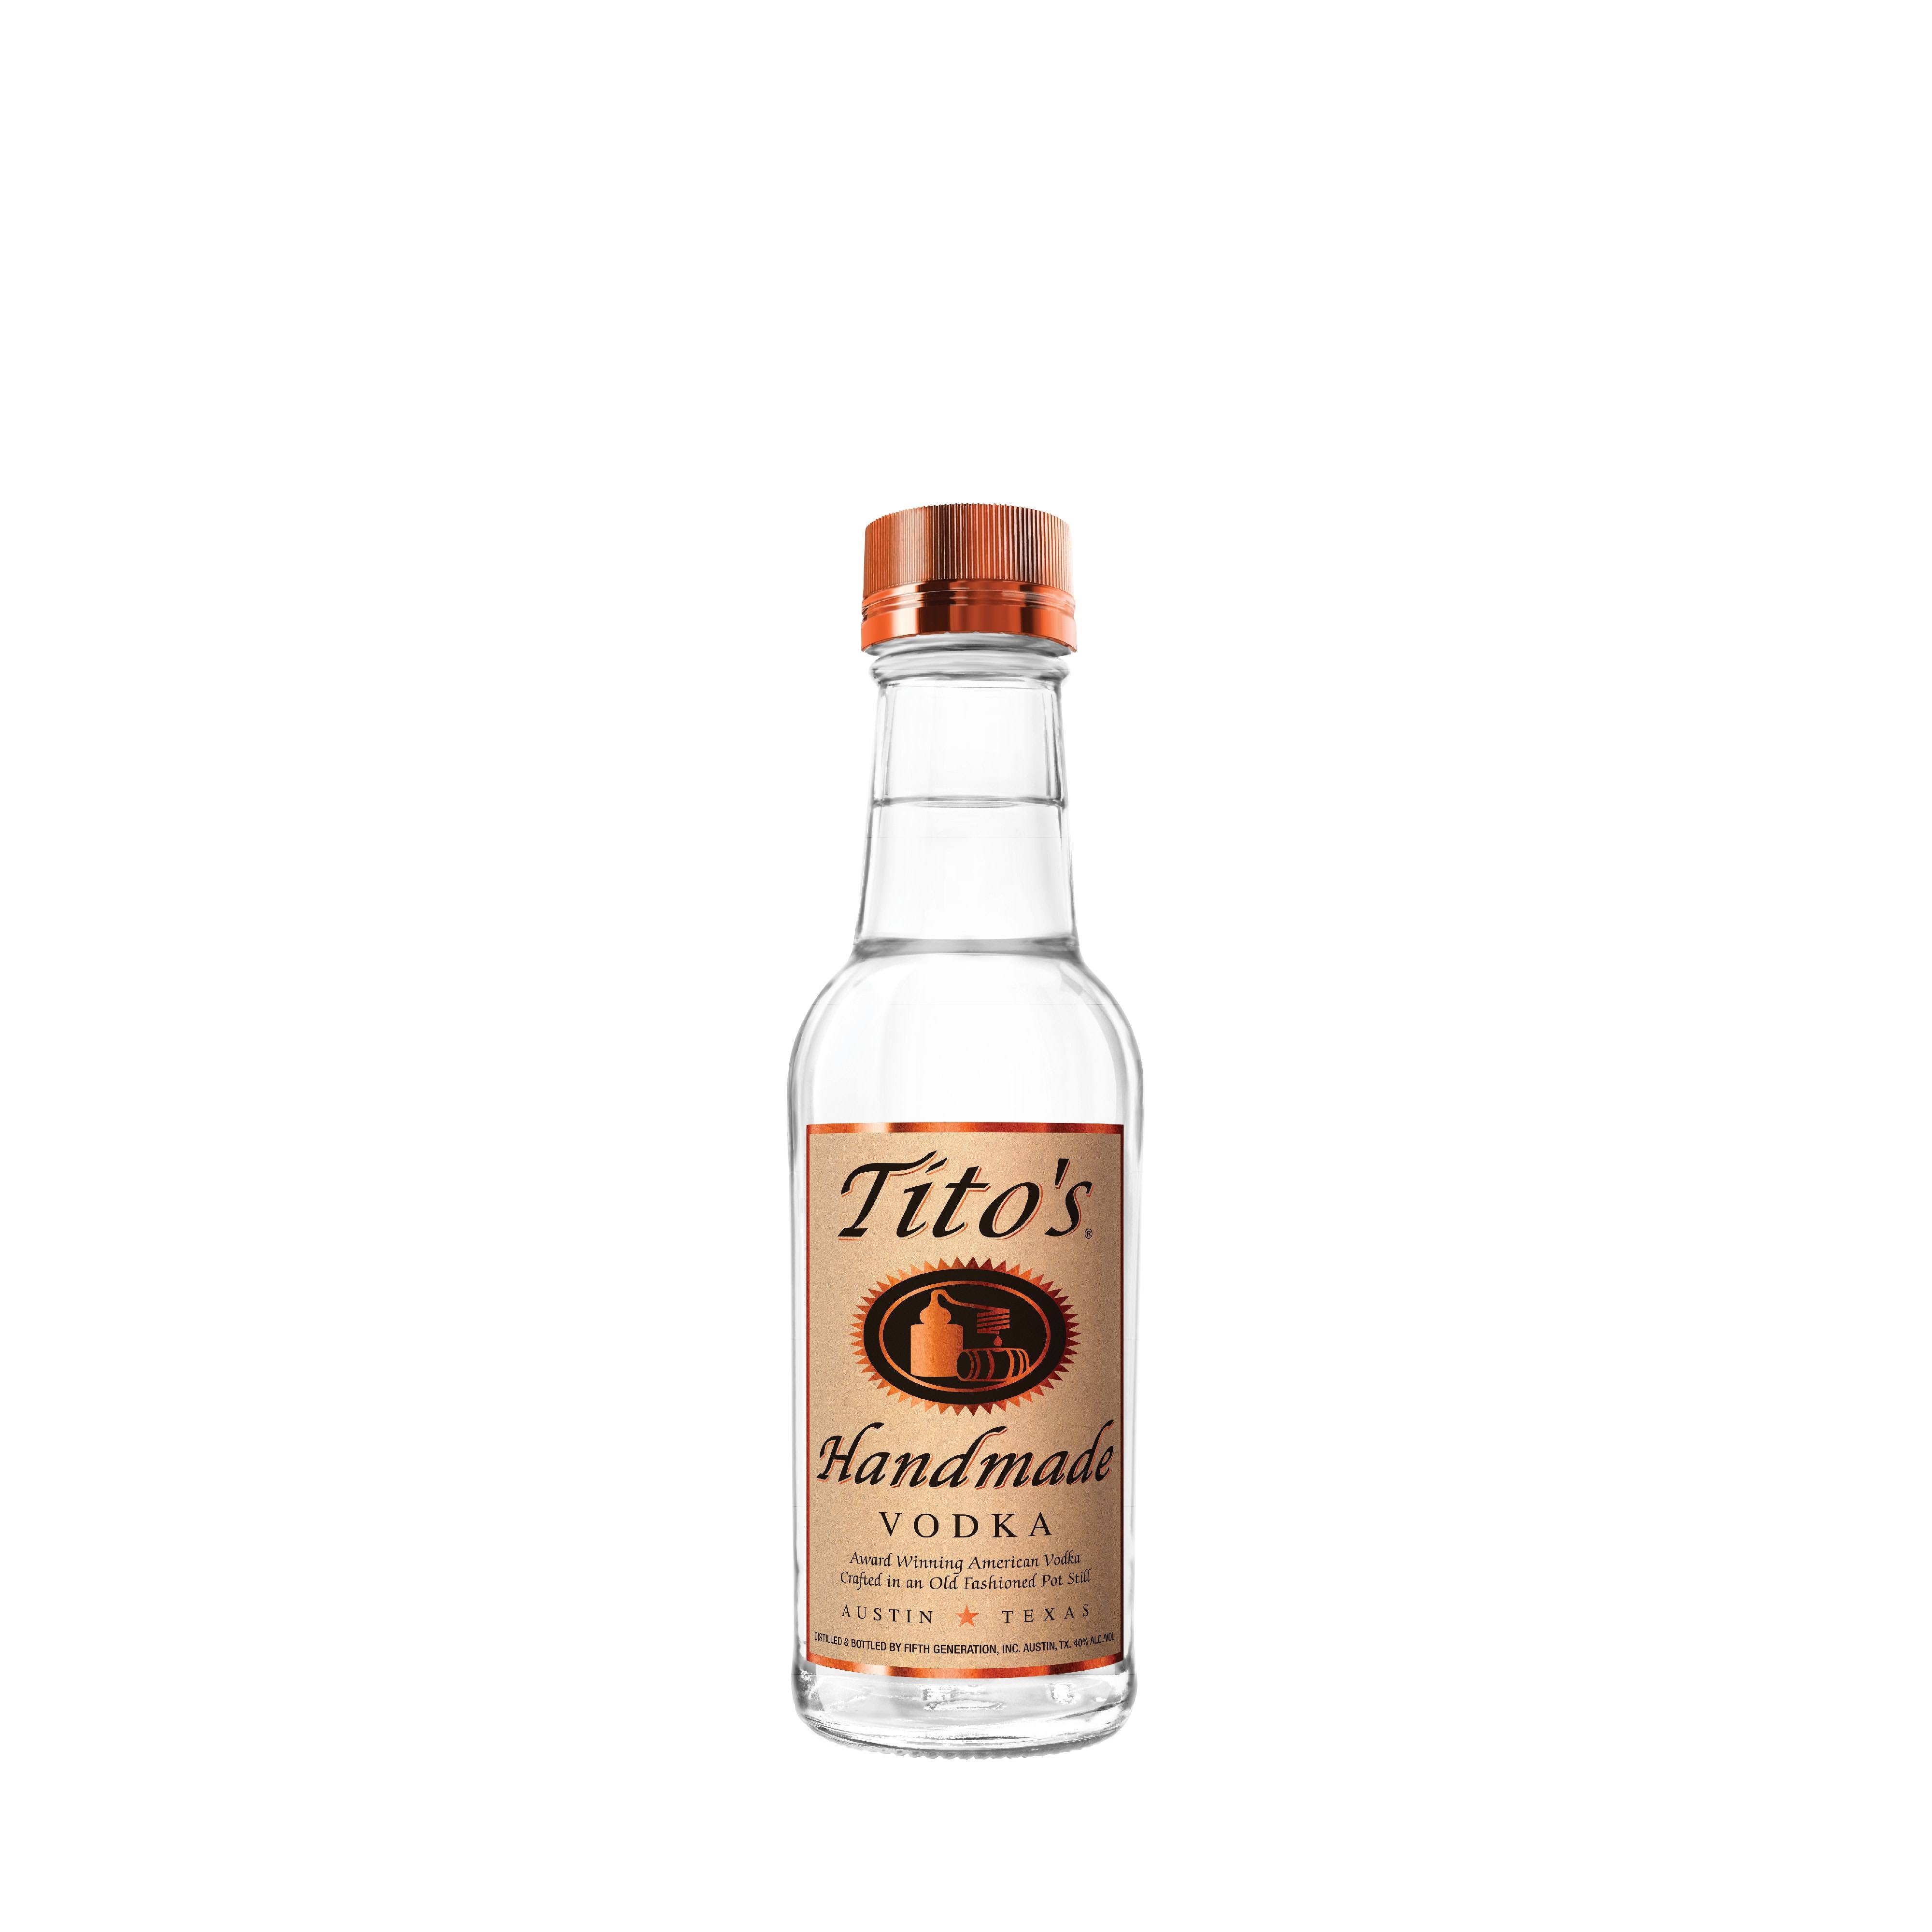 Tito's Handmade Vodka - 200 ml bottle